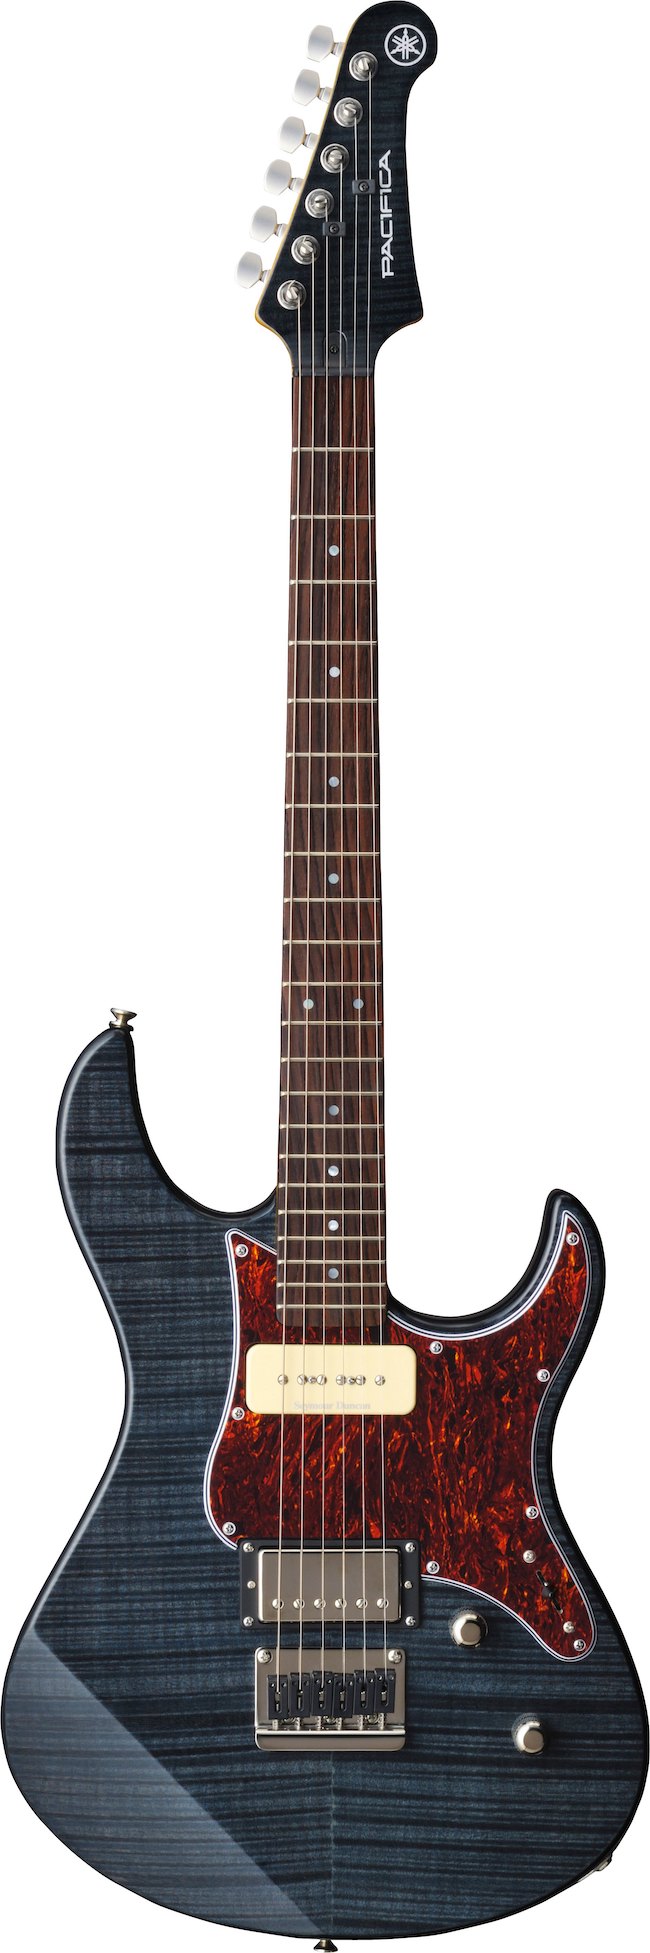 Yamaha PAC611HFM Electric Guitar - Translucent Black